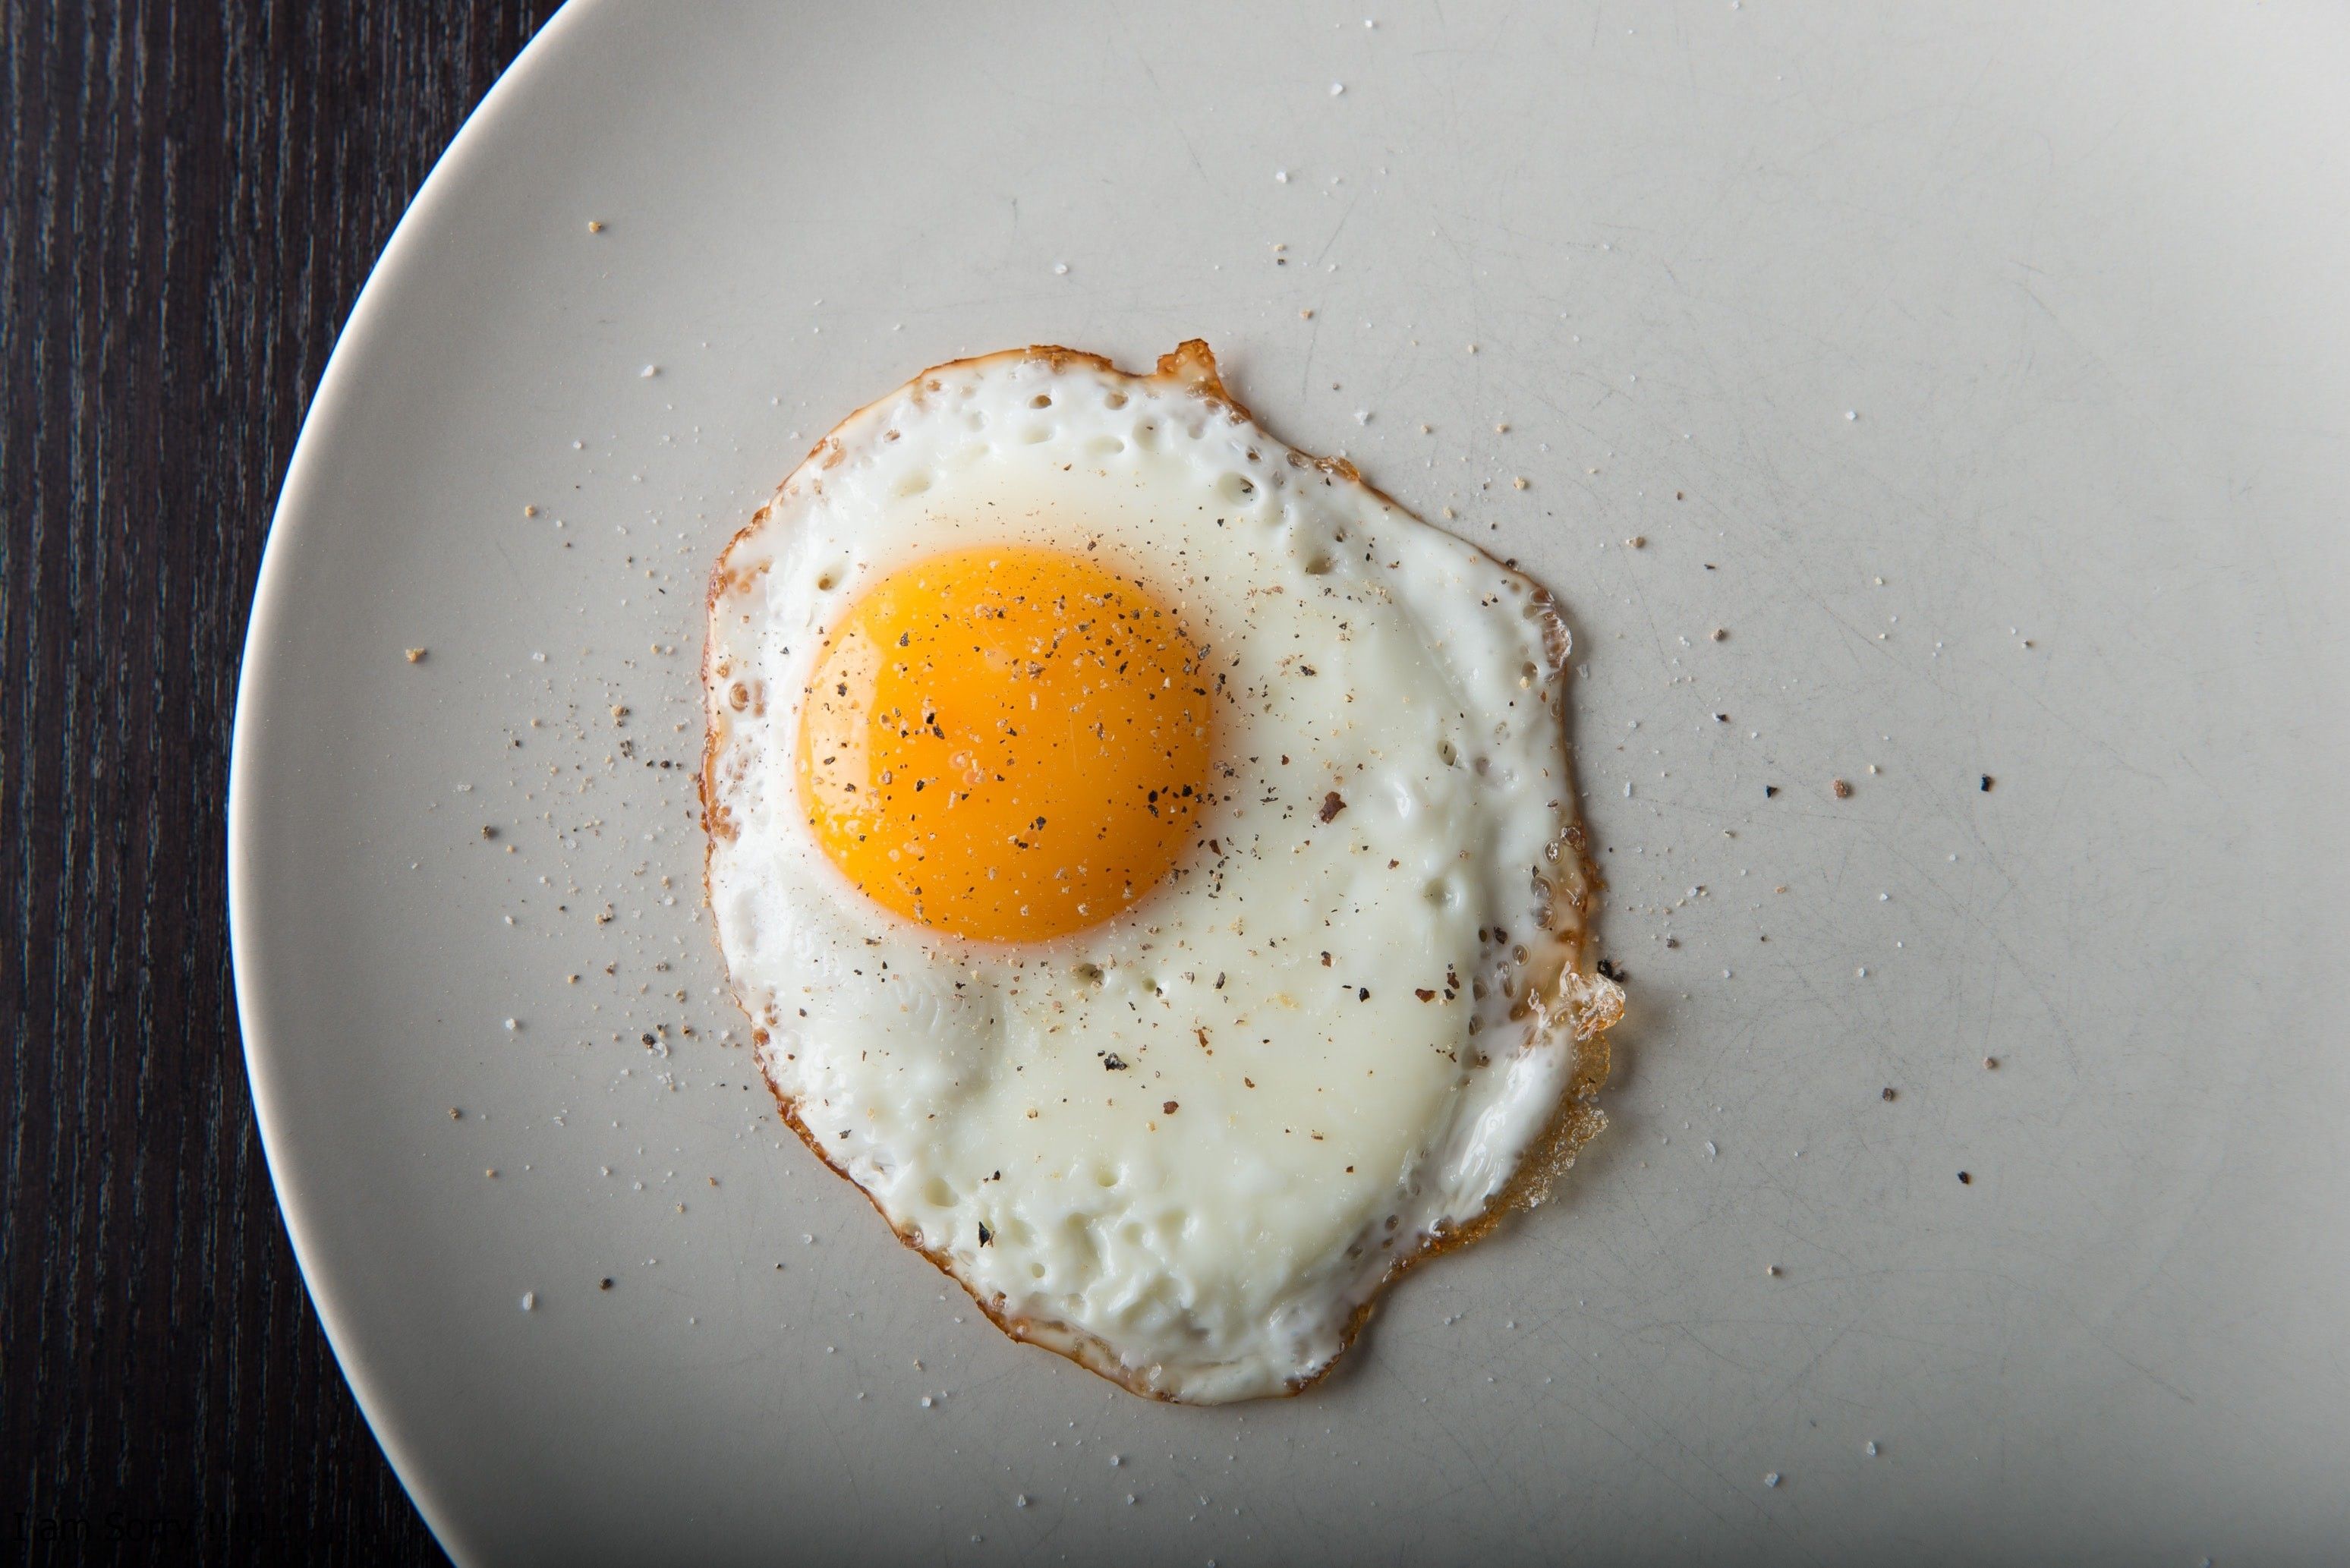 Cómo hacer huevos cocidos en el microondas sin riesgo y por qué